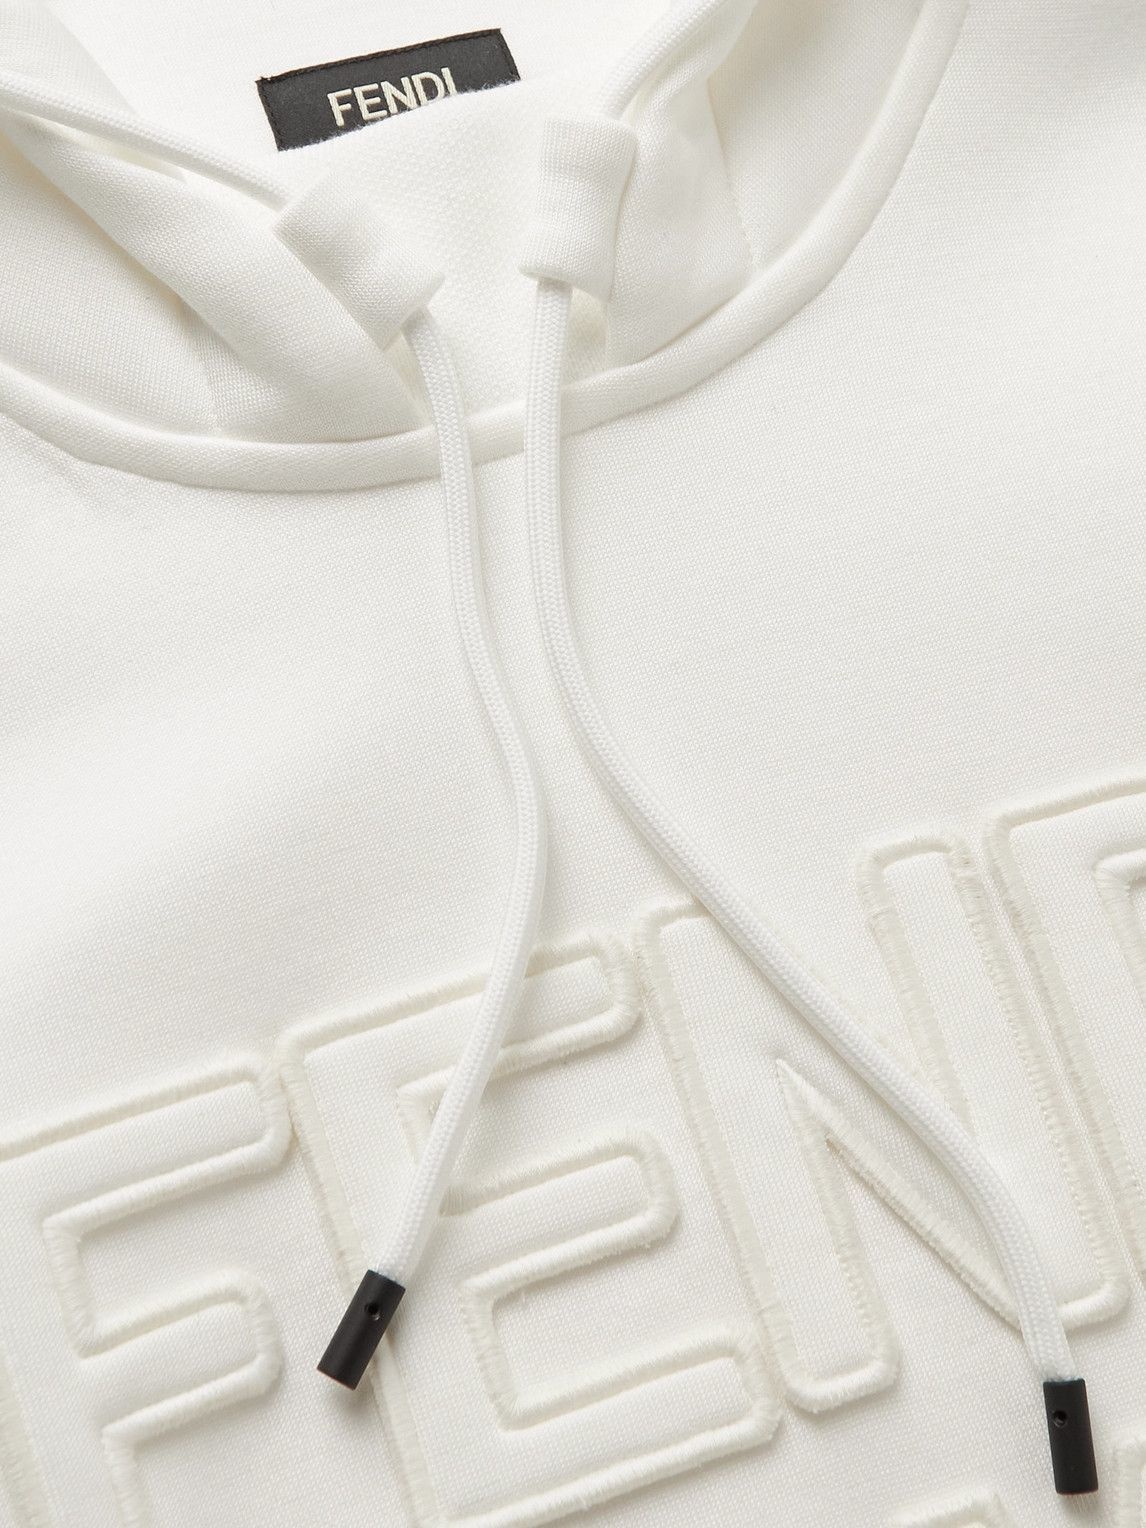 Fendi - Logo-Appliquéd Cotton-Blend Jersey Hoodie - White Fendi